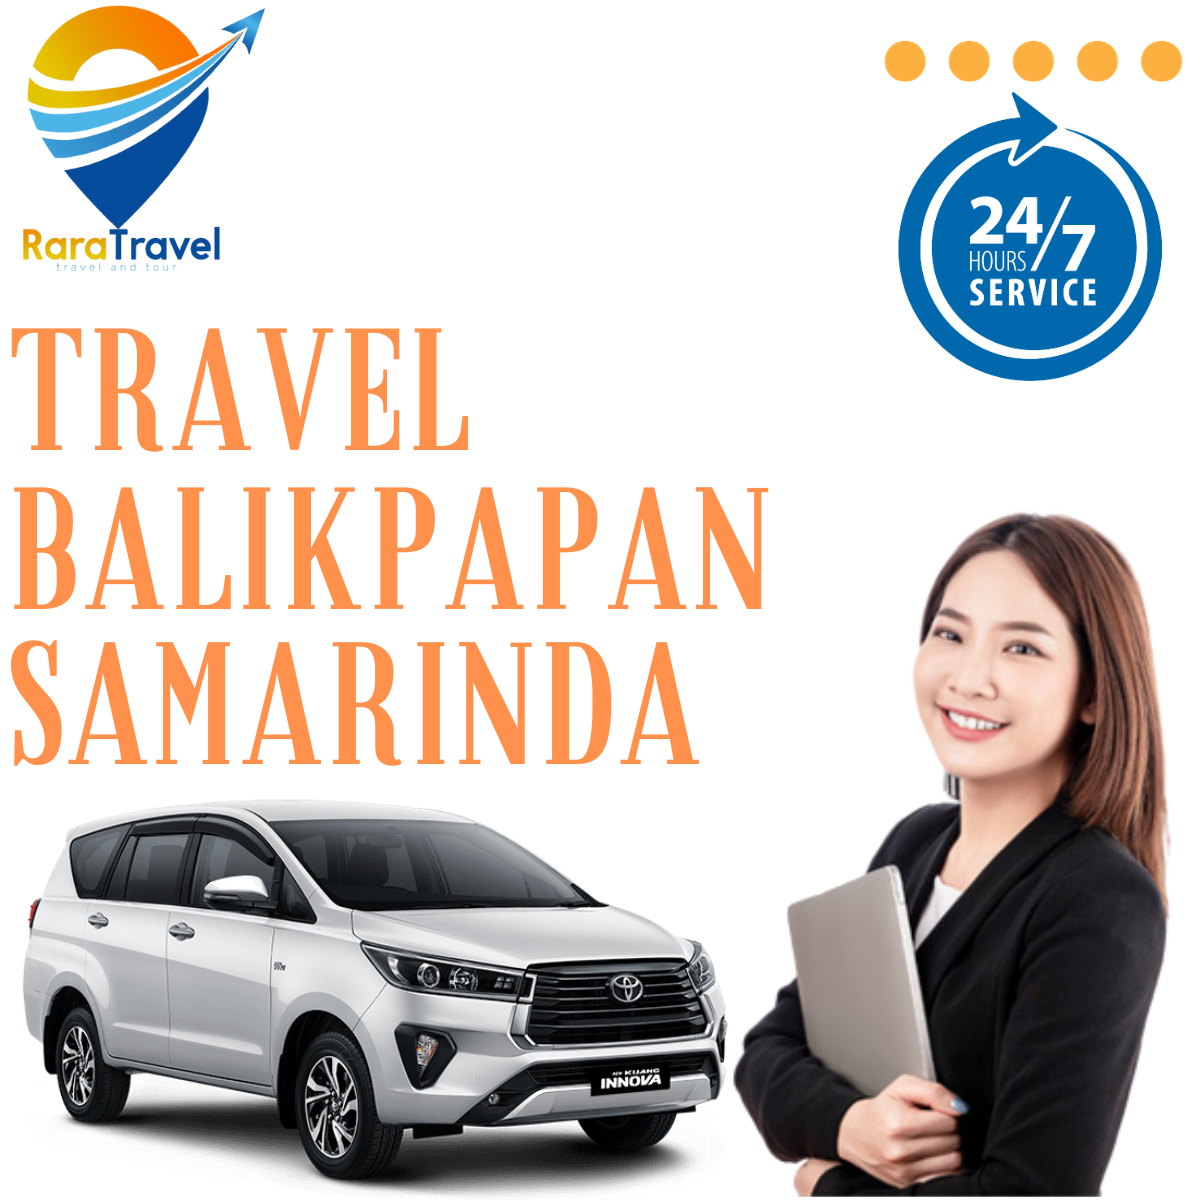 Travel Balikpapan Samarinda PP Harga Tiket Murah Mulai 100K via TOLL